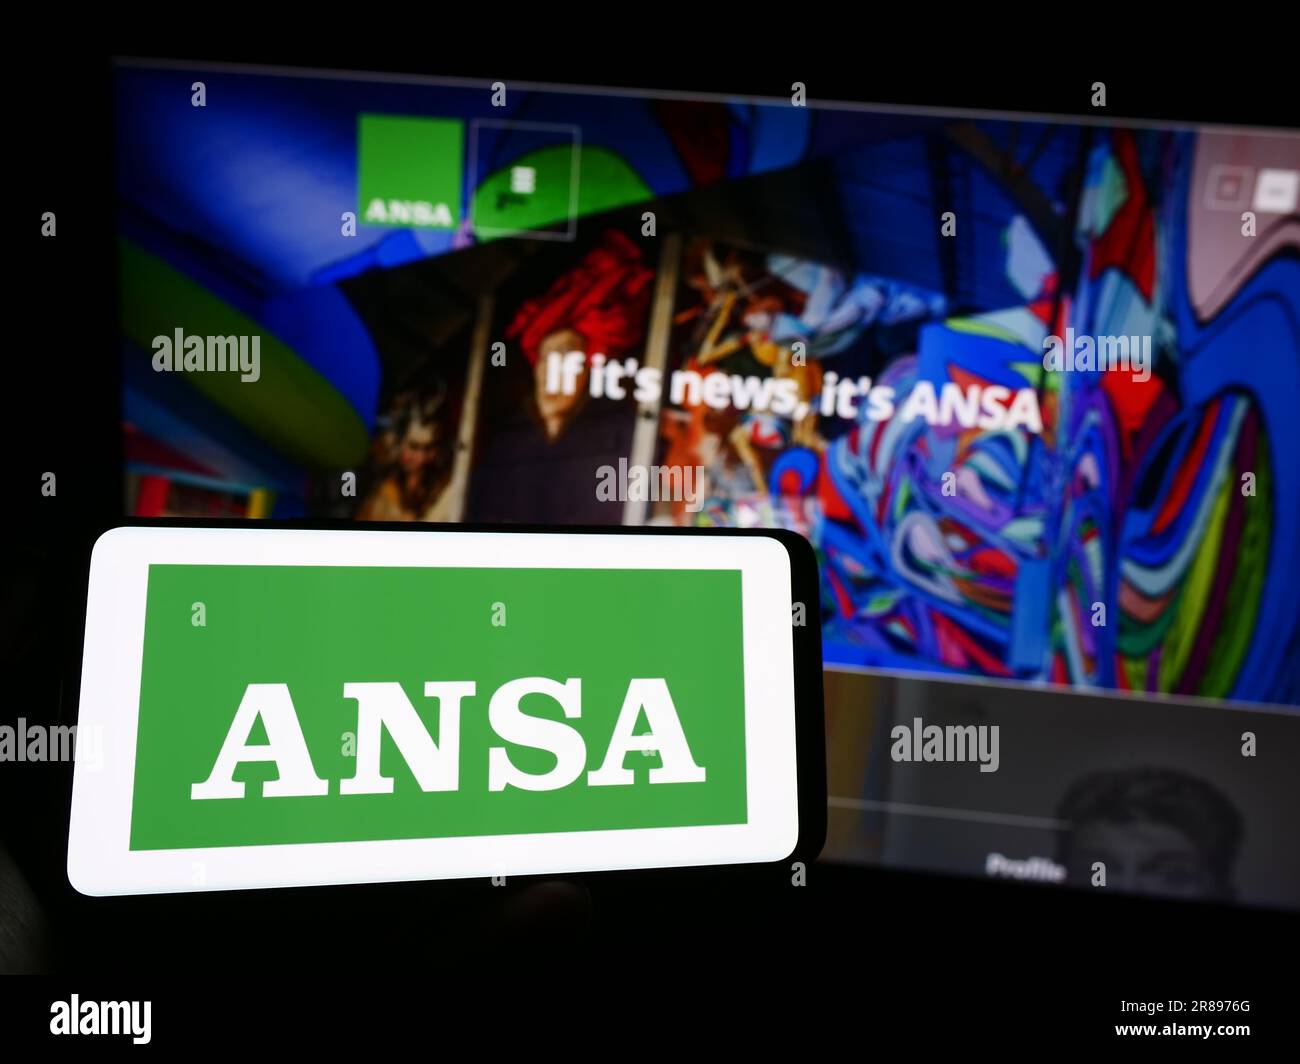 Personne tenant un téléphone portable avec le logo de l'Agence Nazionale Stampa Associata (ANSA) à l'écran en face de la page web. Mise au point sur l'affichage du téléphone. Banque D'Images